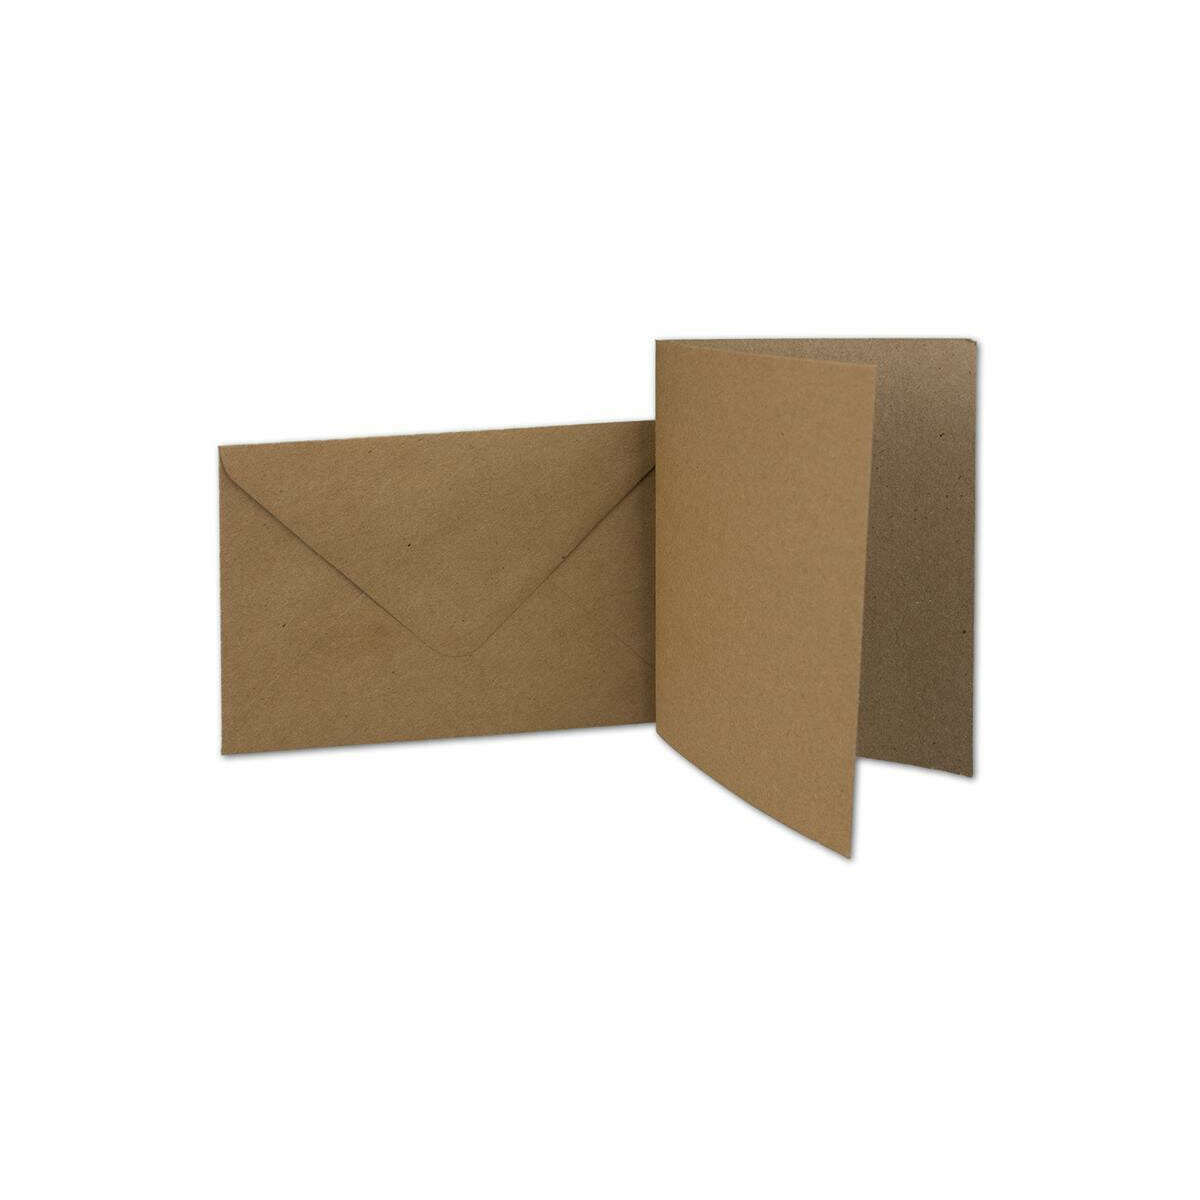 150x Kraft-Papier Brief-Umschläge sandbraun gefüttert Nassklebung ohne Fenster weißes Seidenfutter Serie UmWelt 114 x 162 mm Recycling Umschläge DIN C6 